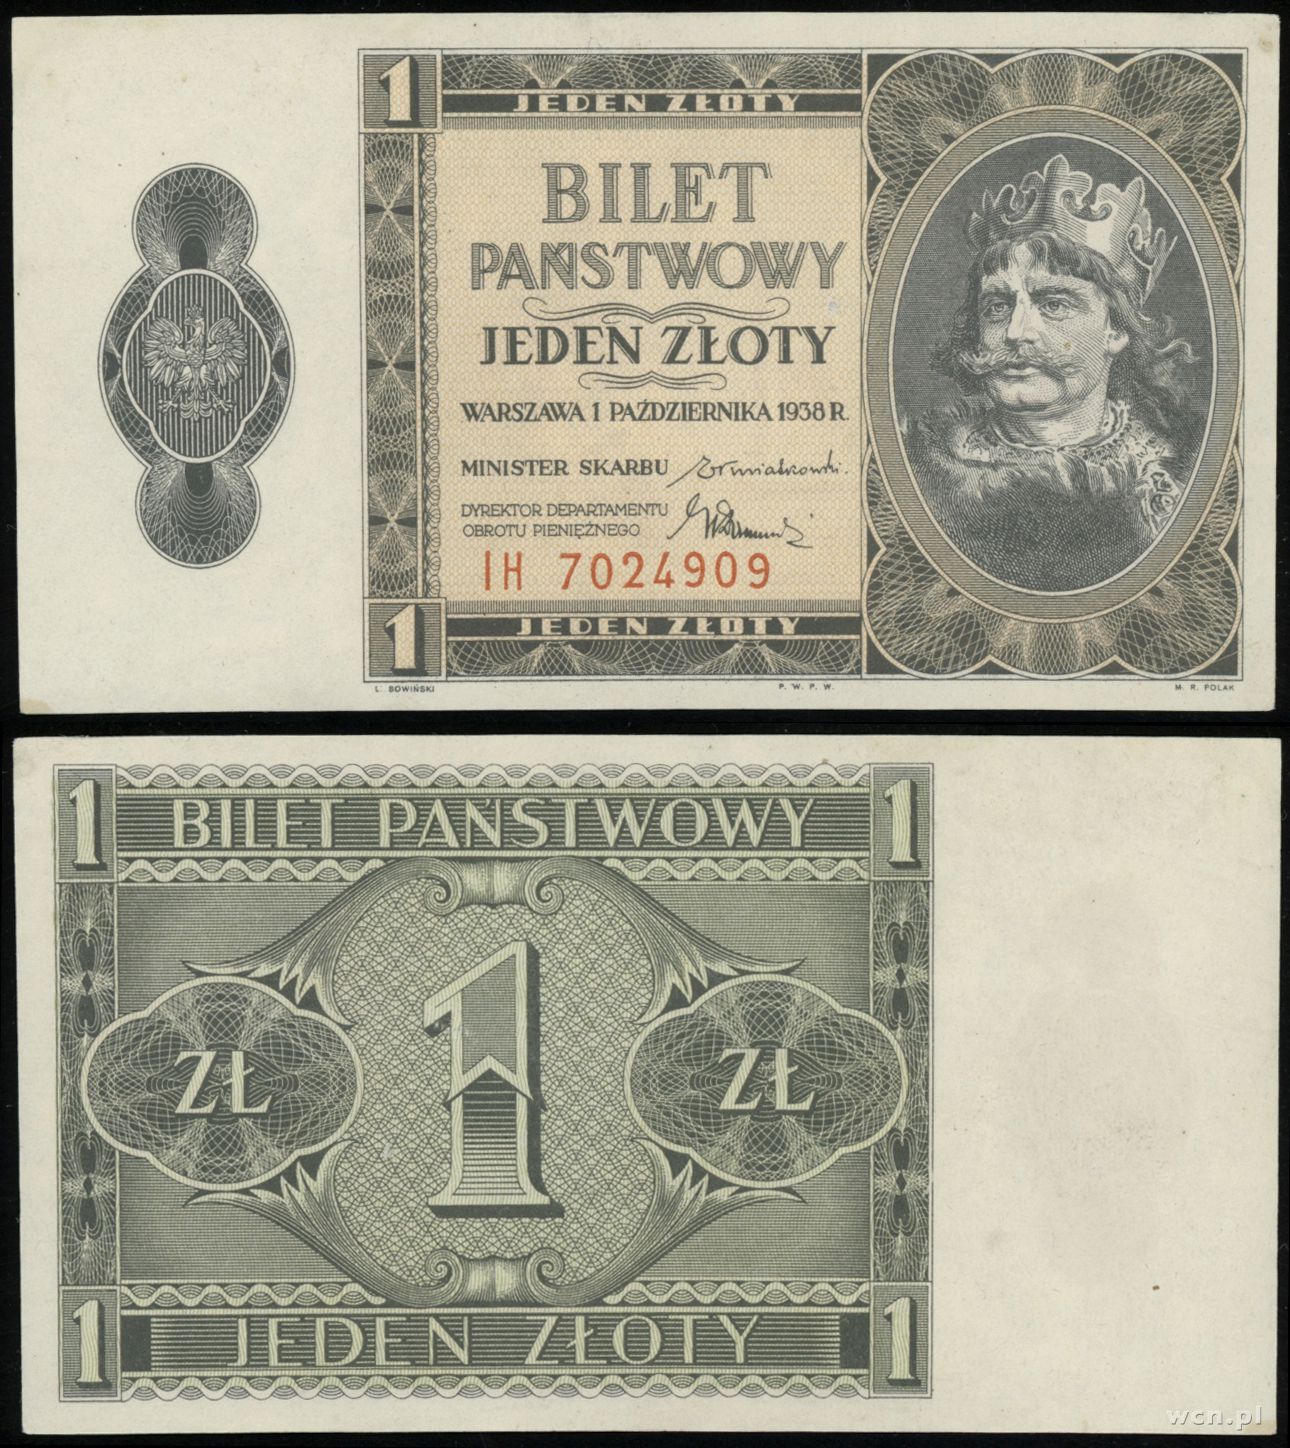 1 złoty 1.10.1938, seria IH, numeracja 7024909, 